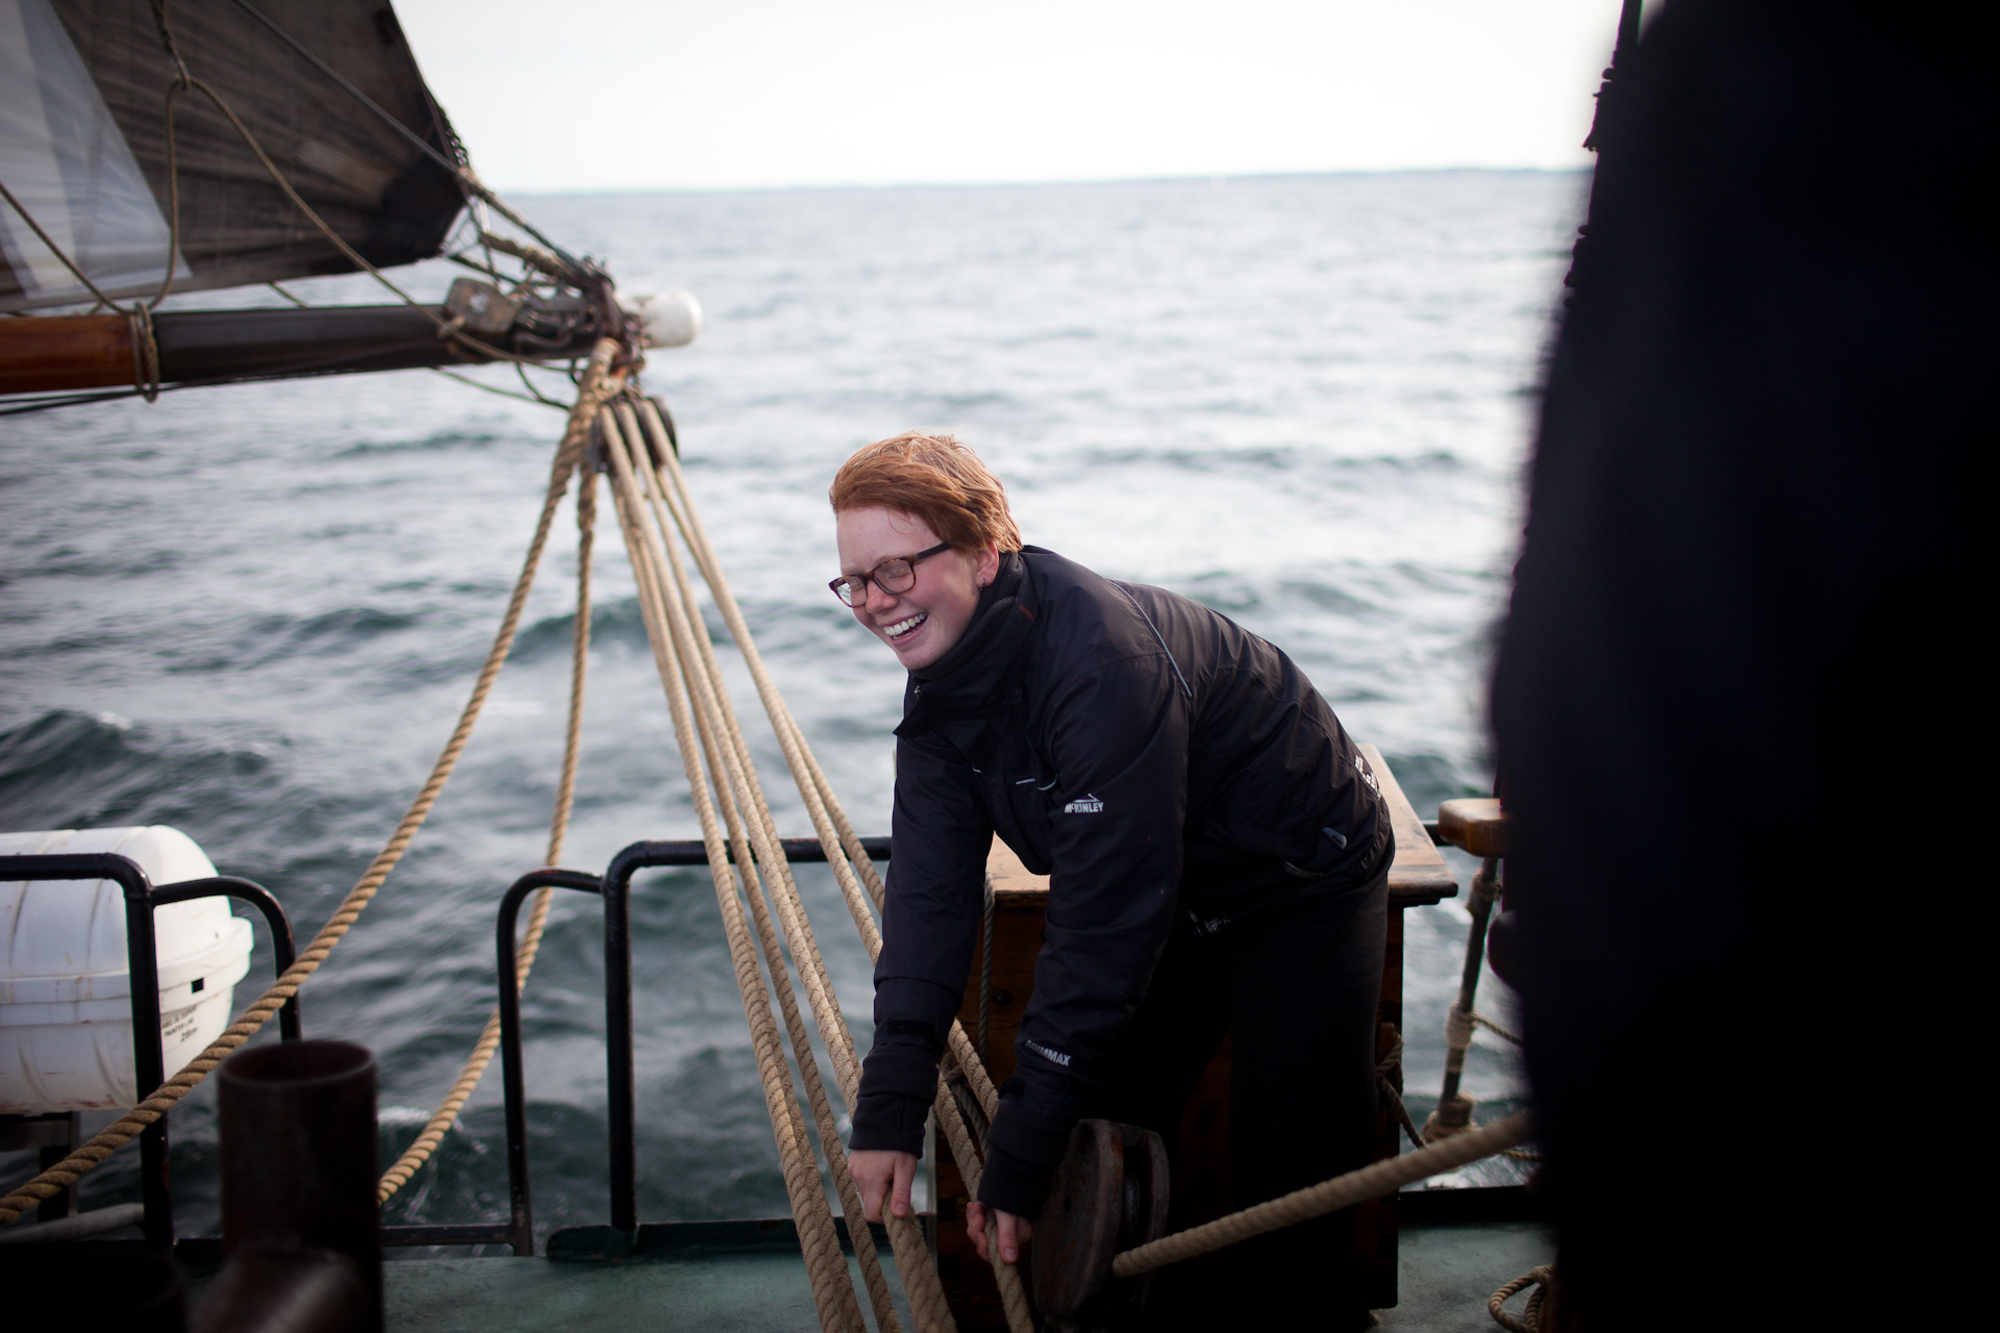 Charlotte Strauss auf dem Schiff Fridjof Nanson wo sie ihren Ausbildungsturn om 31. 7 bis 5. 8 absolviert. Fotograf: Evi Lemberger